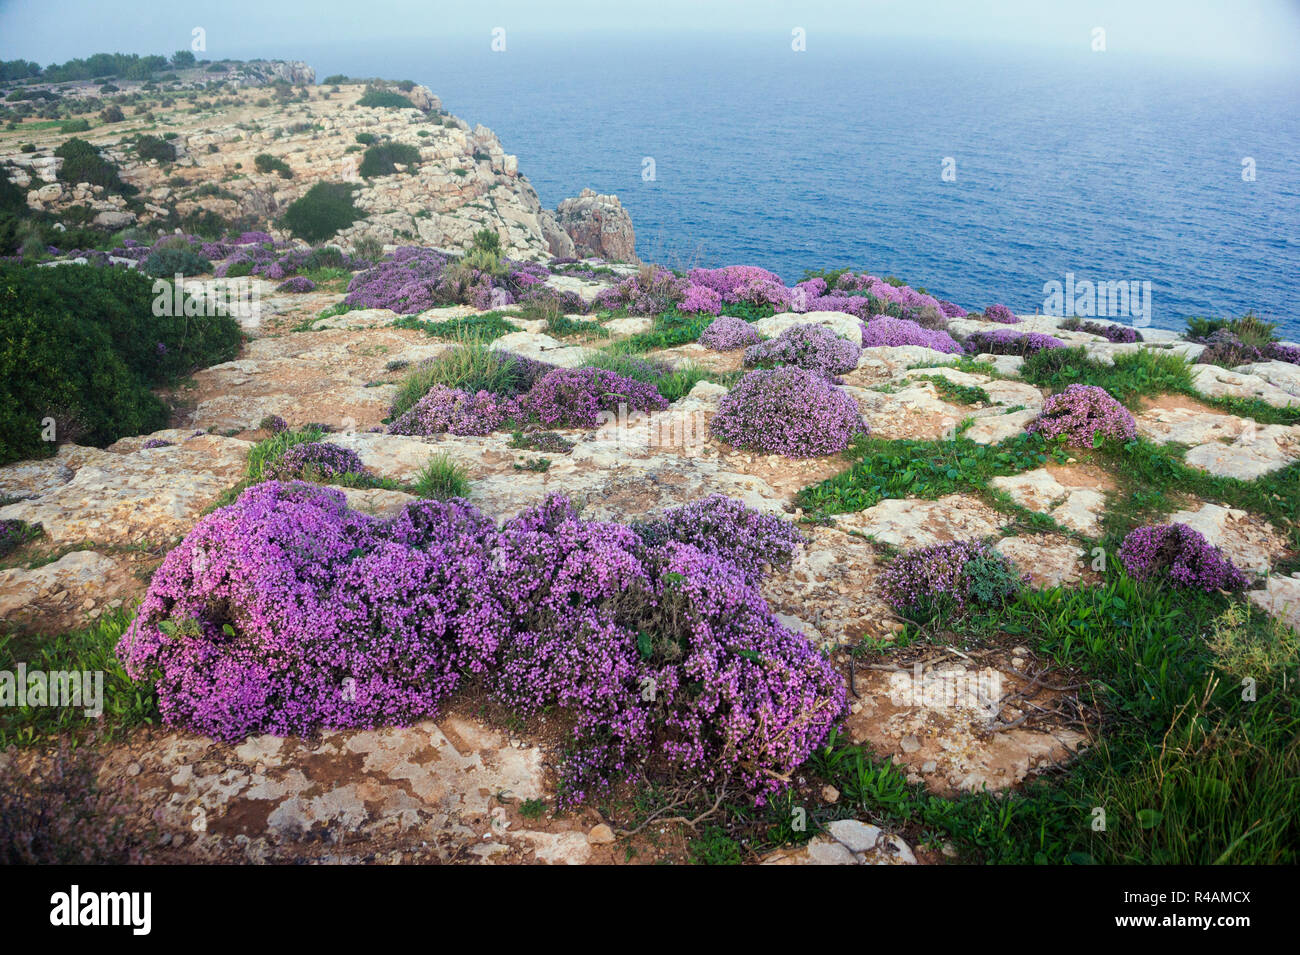 Flores Silvestres de Formentera, acantilados, islas baleares españa Foto de stock